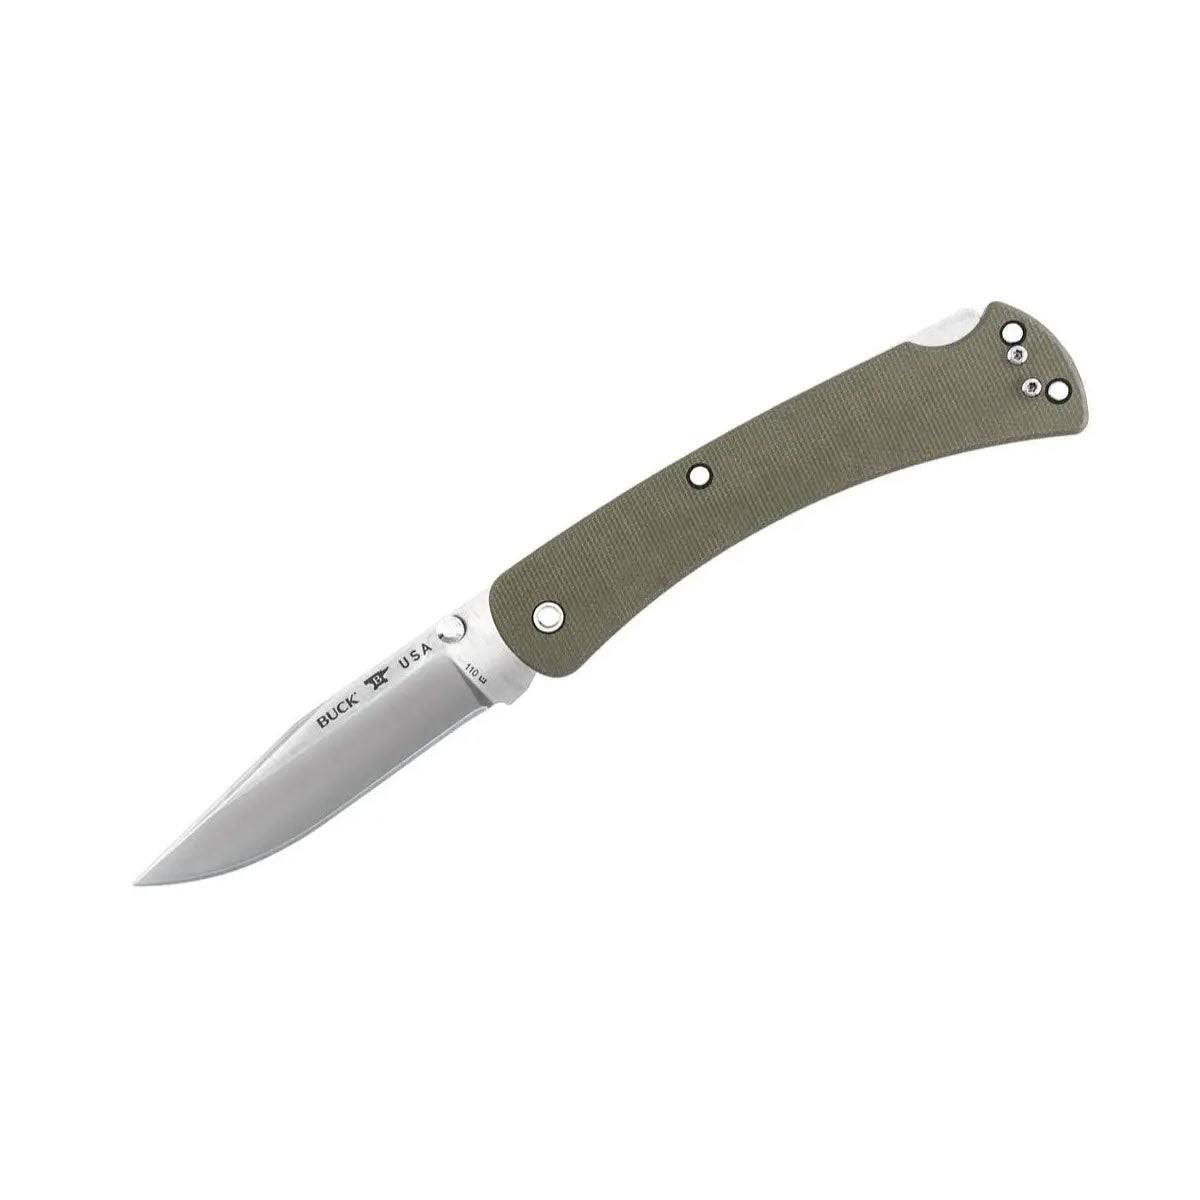 Buck 110 Slim Pro S30v Hunter Folder Pocket Knife - Green, 3.75"